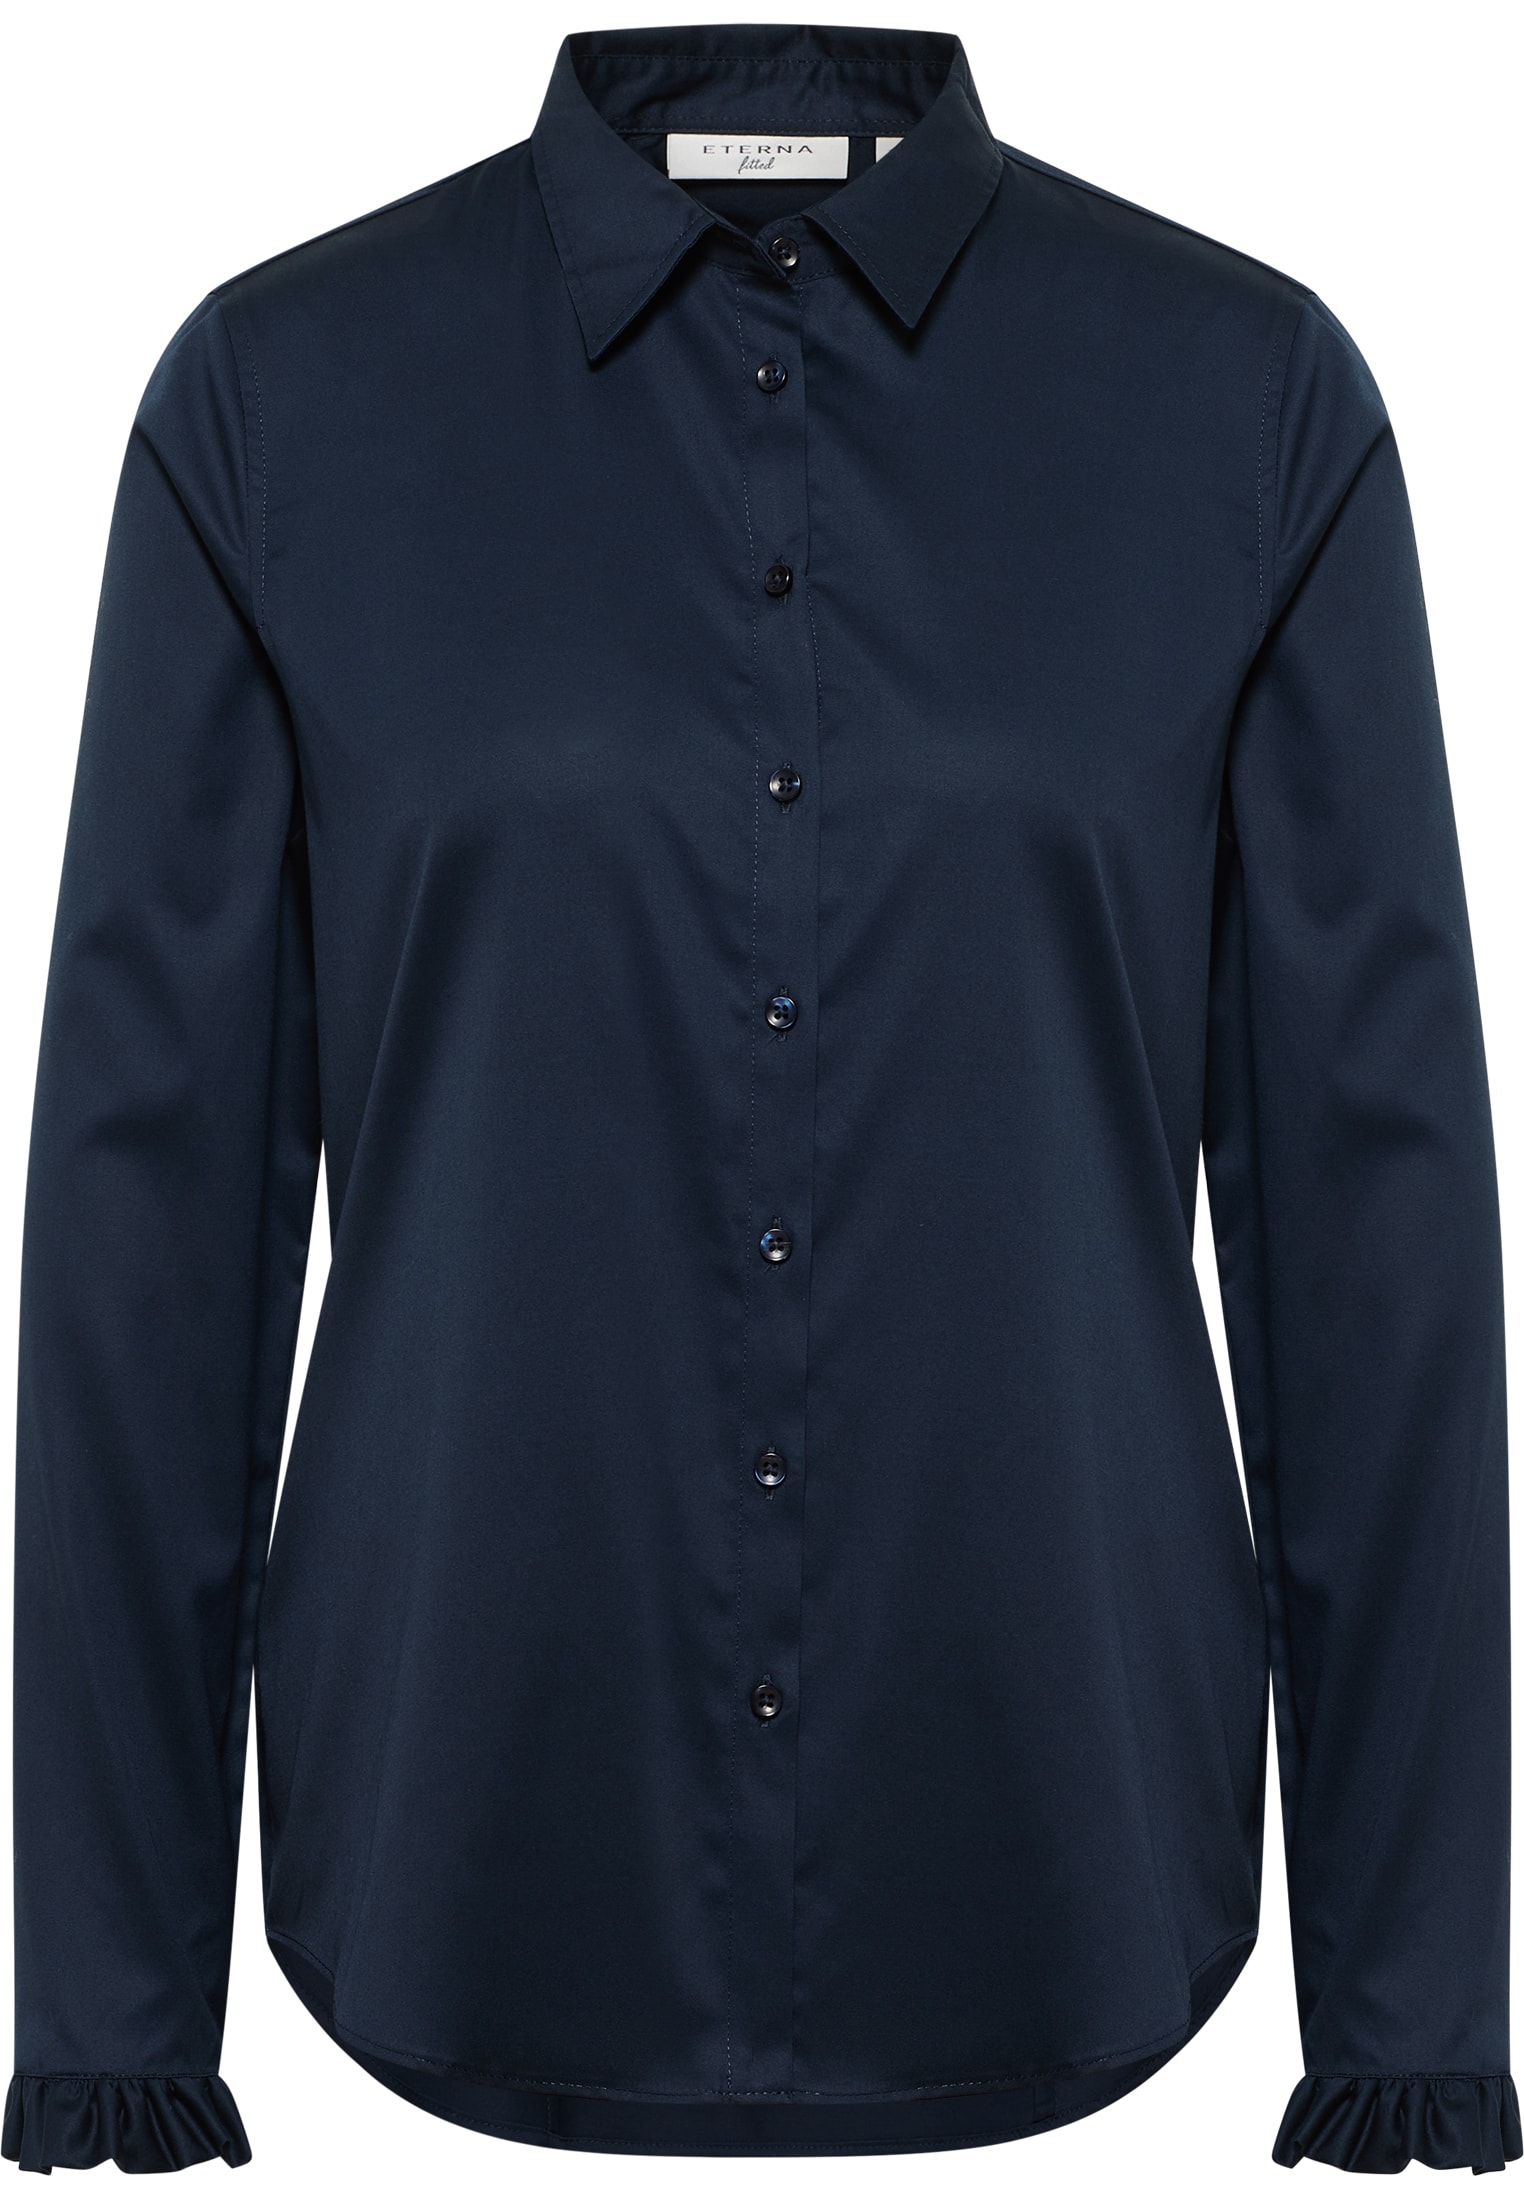 Satin Shirt Bluse | Langarm navy in unifarben | 2BL04181-01-91-40-1/1 40 navy | 